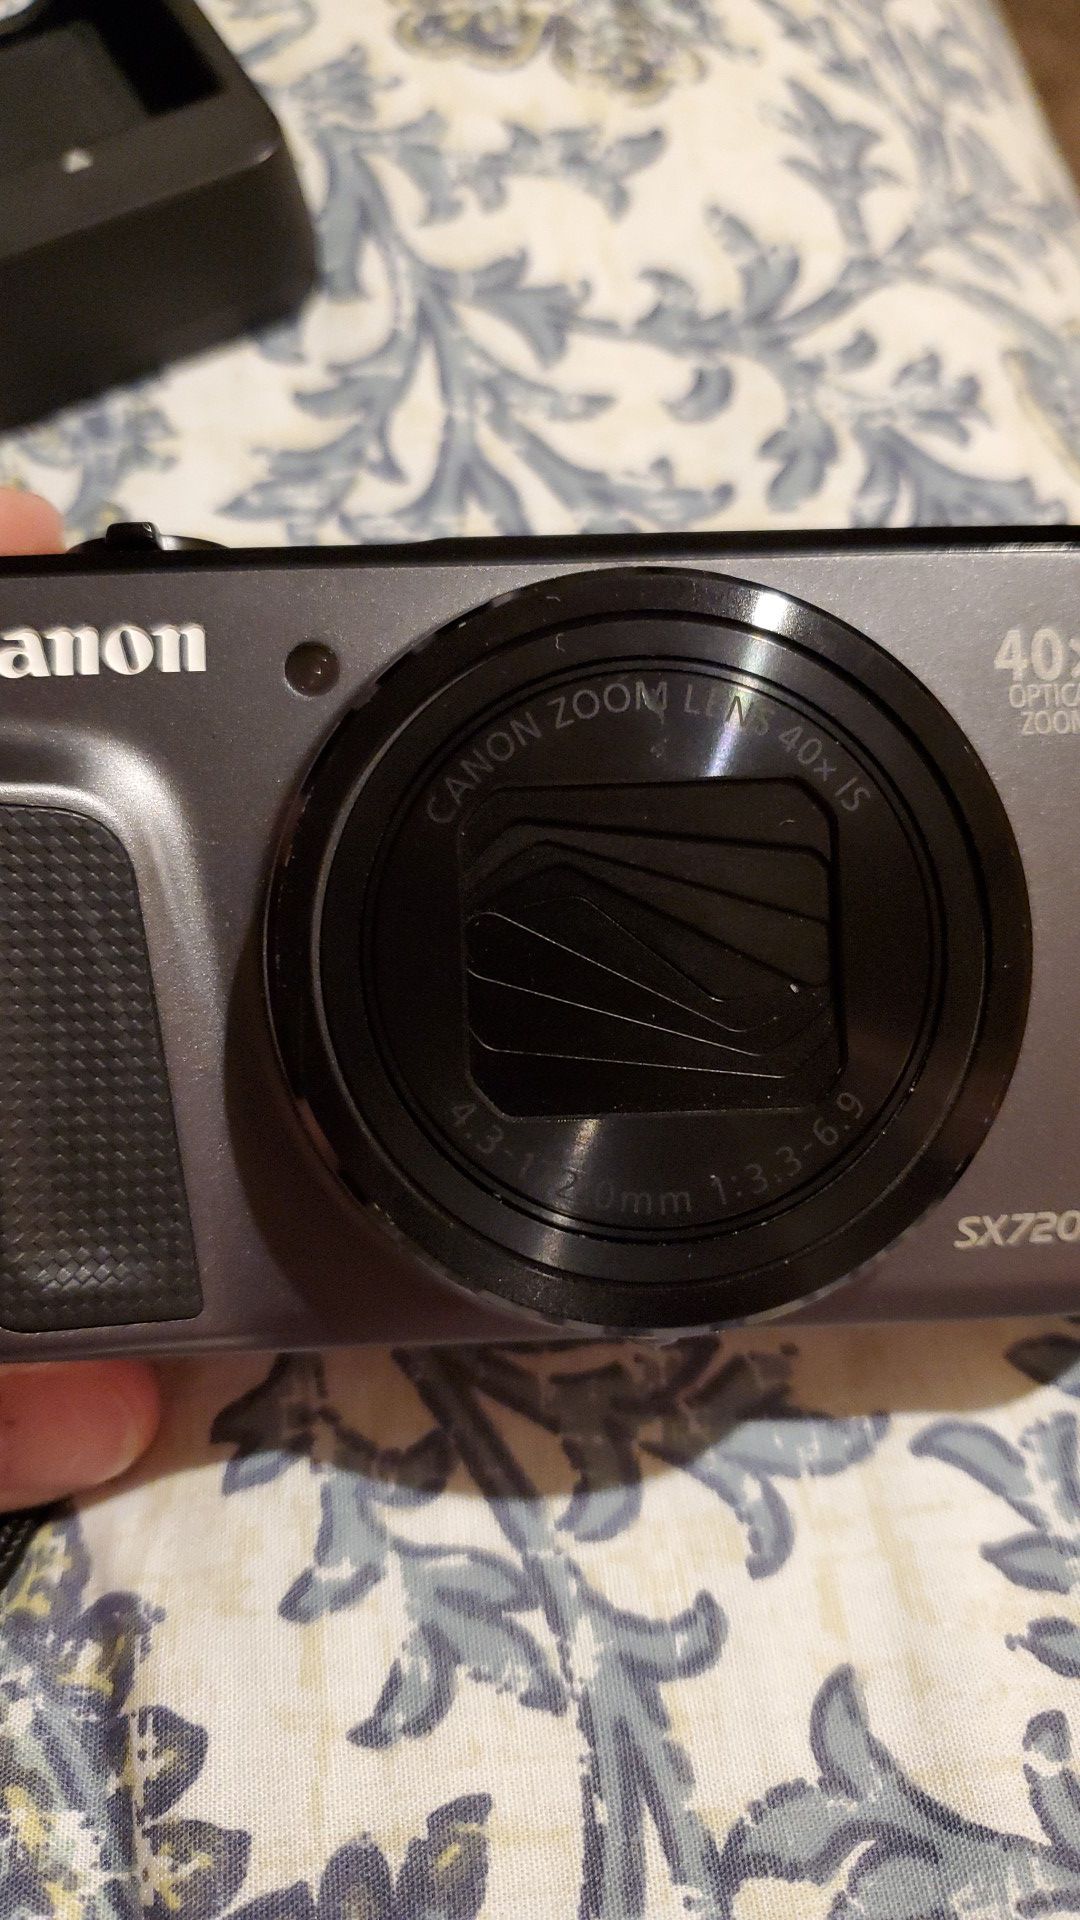 Canon powershot SX720 HS